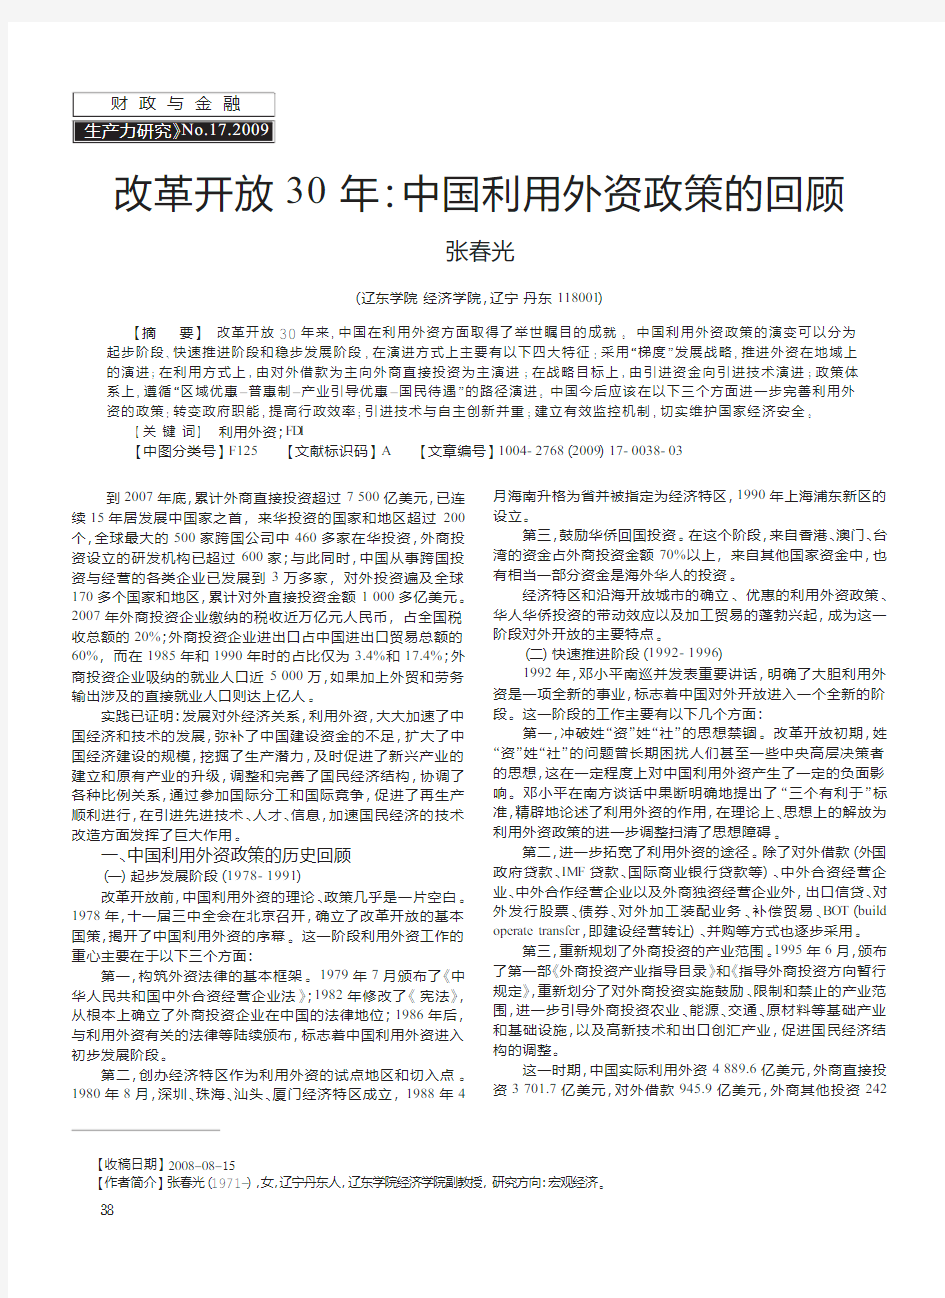 改革开放30年_中国利用外资政策的回顾